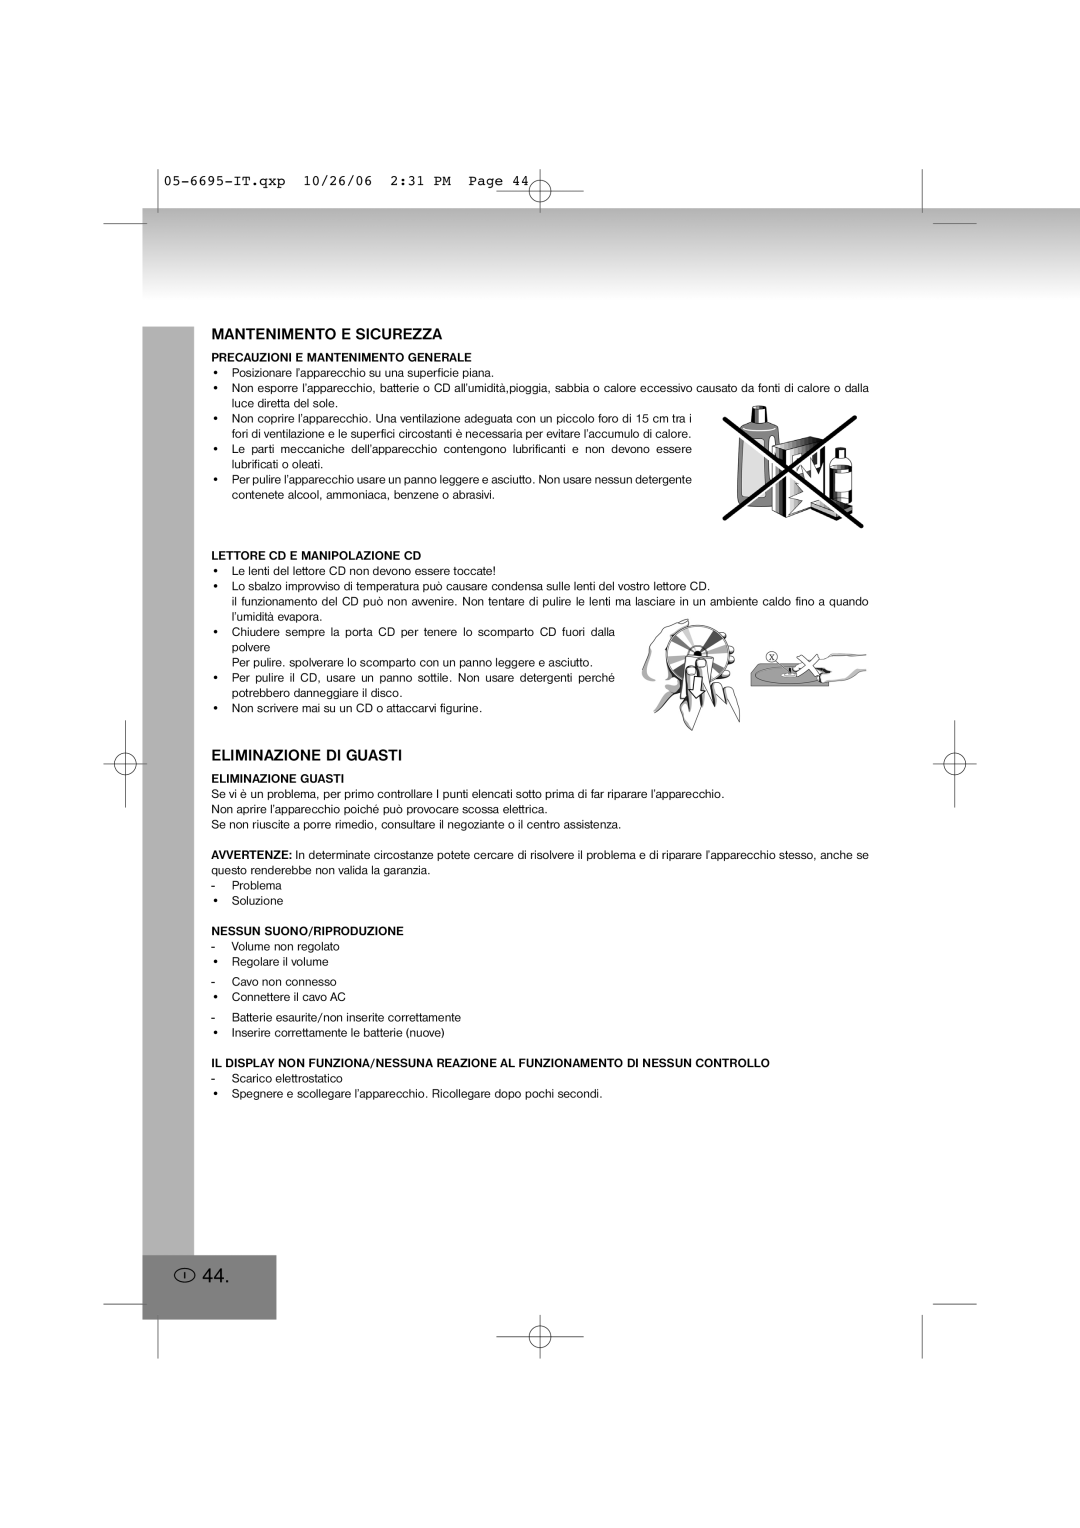 Elta manual Mantenimento E Sicurezza, Eliminazione Di Guasti, 05-6695-IT.qxp10/26/06 2 31 PM Page 